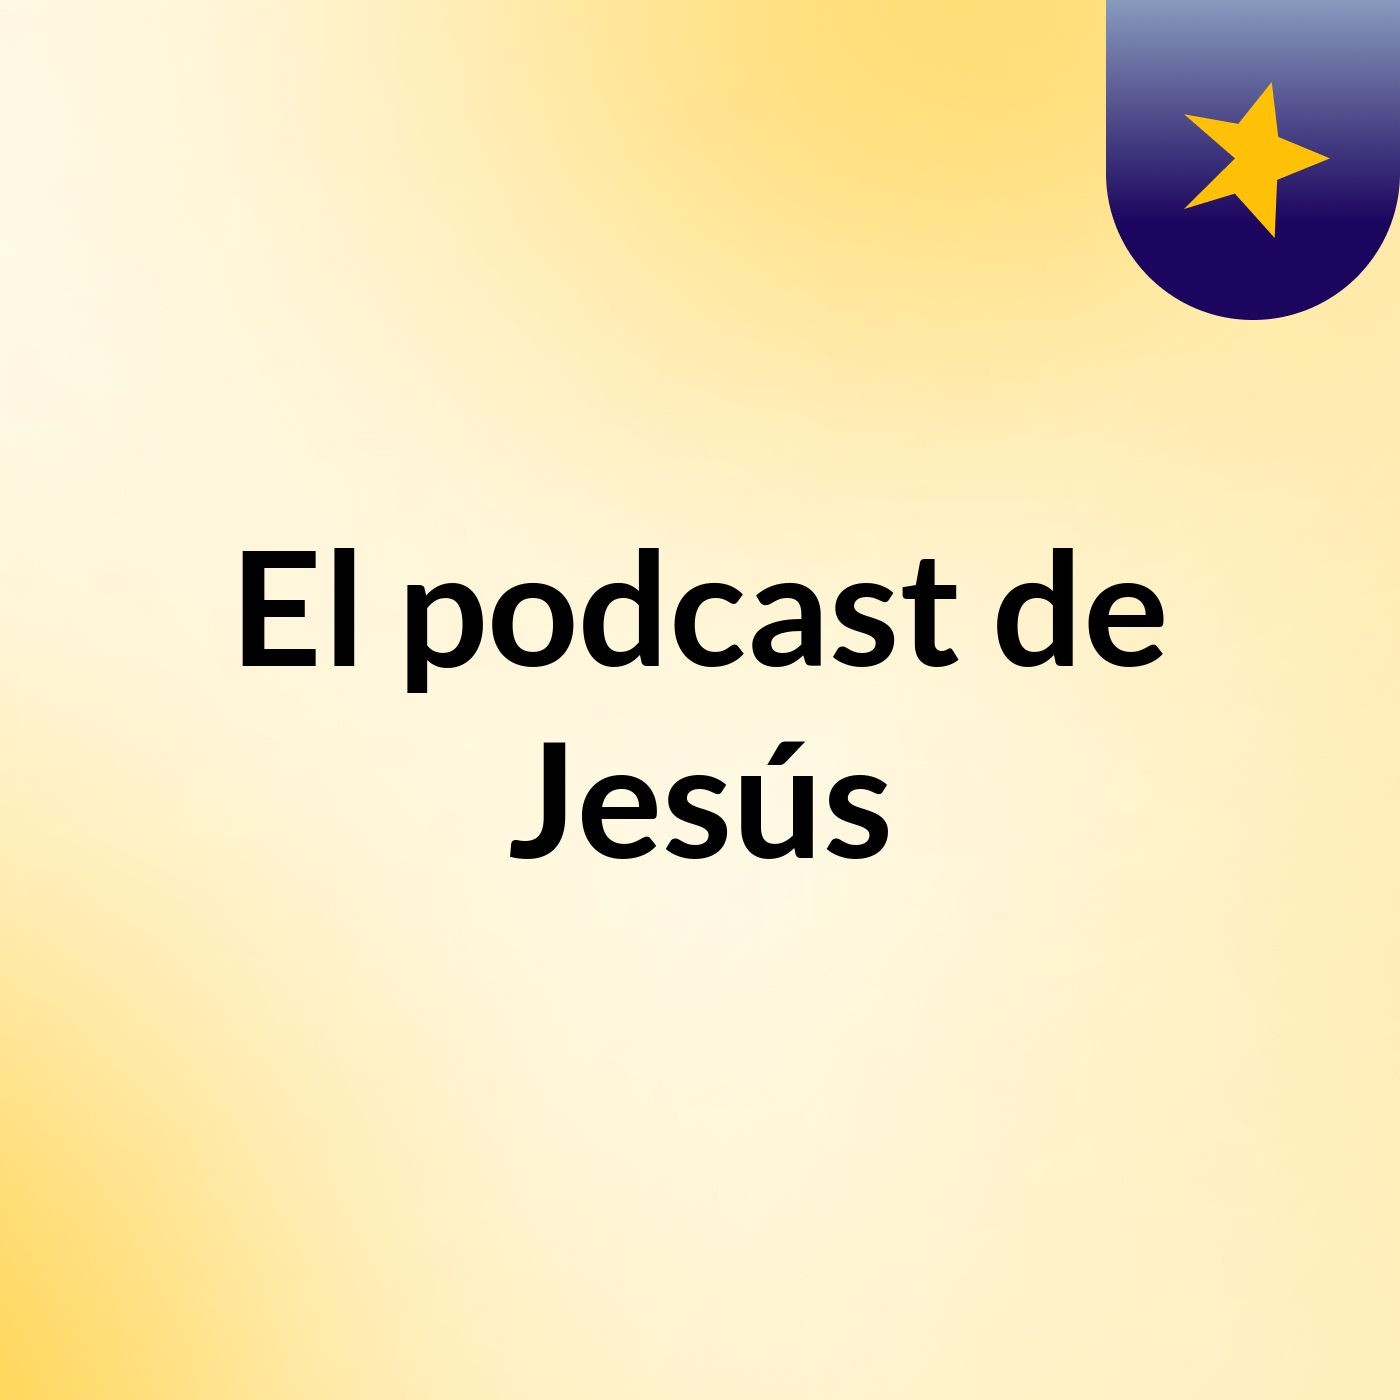 Episodio 16 - El podcast de Jesús